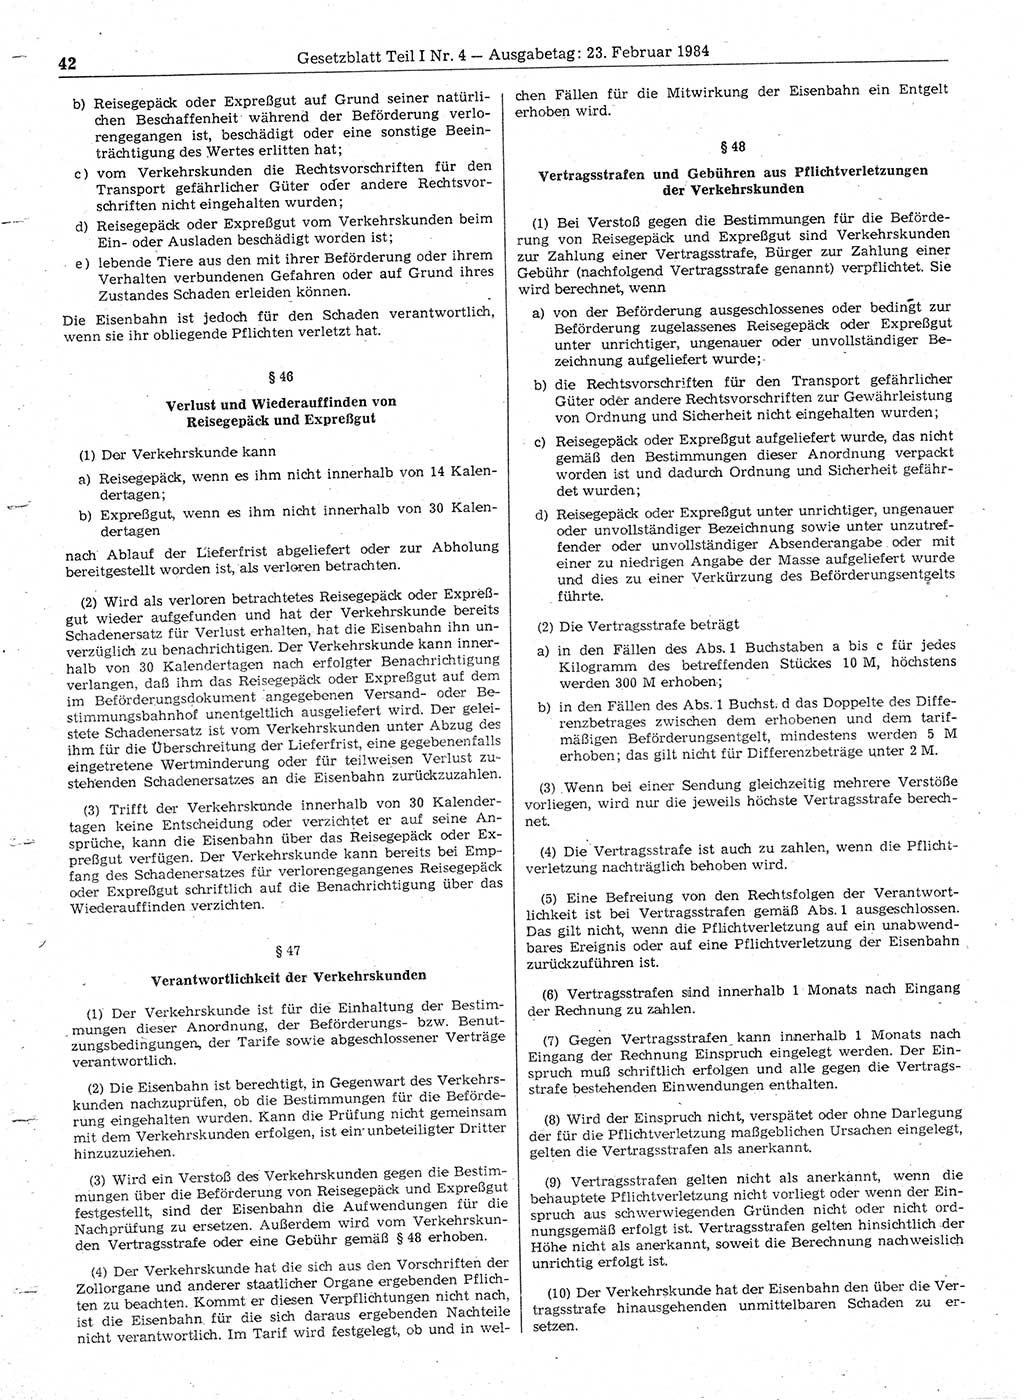 Gesetzblatt (GBl.) der Deutschen Demokratischen Republik (DDR) Teil Ⅰ 1984, Seite 42 (GBl. DDR Ⅰ 1984, S. 42)